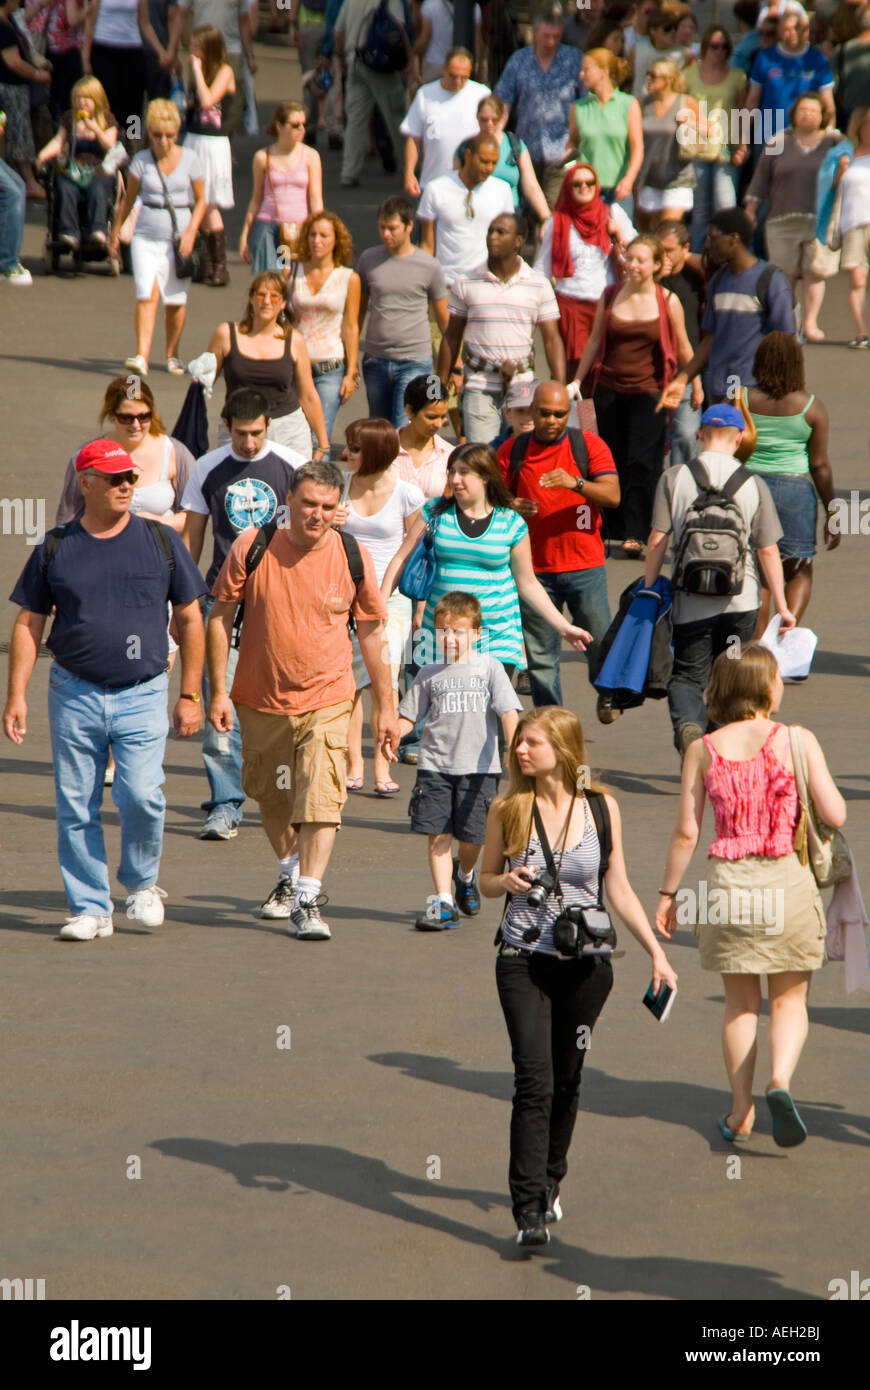 Vertikale Antenne Nahaufnahme von Massen von Menschen - Männer, Frauen und Kinder - Spaziergang in der Sonne Stockfoto